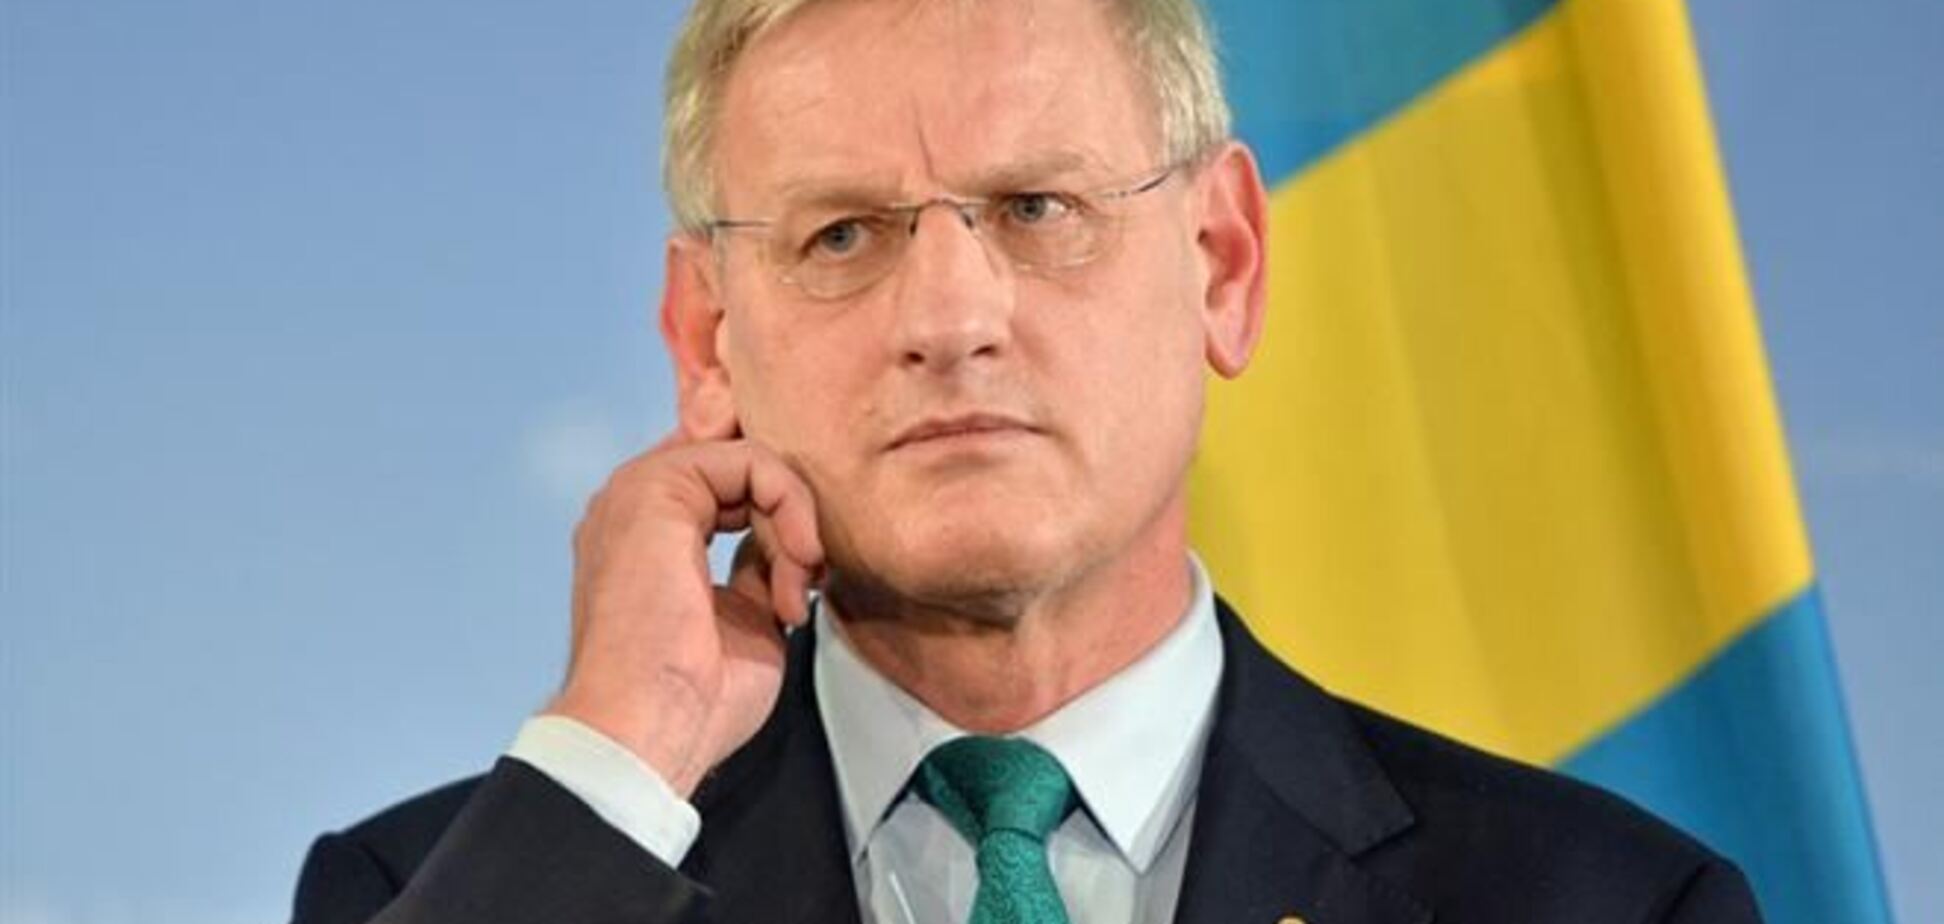 ЕС ведет переговоры с США относительно санкций против украинской власти - Бильдт